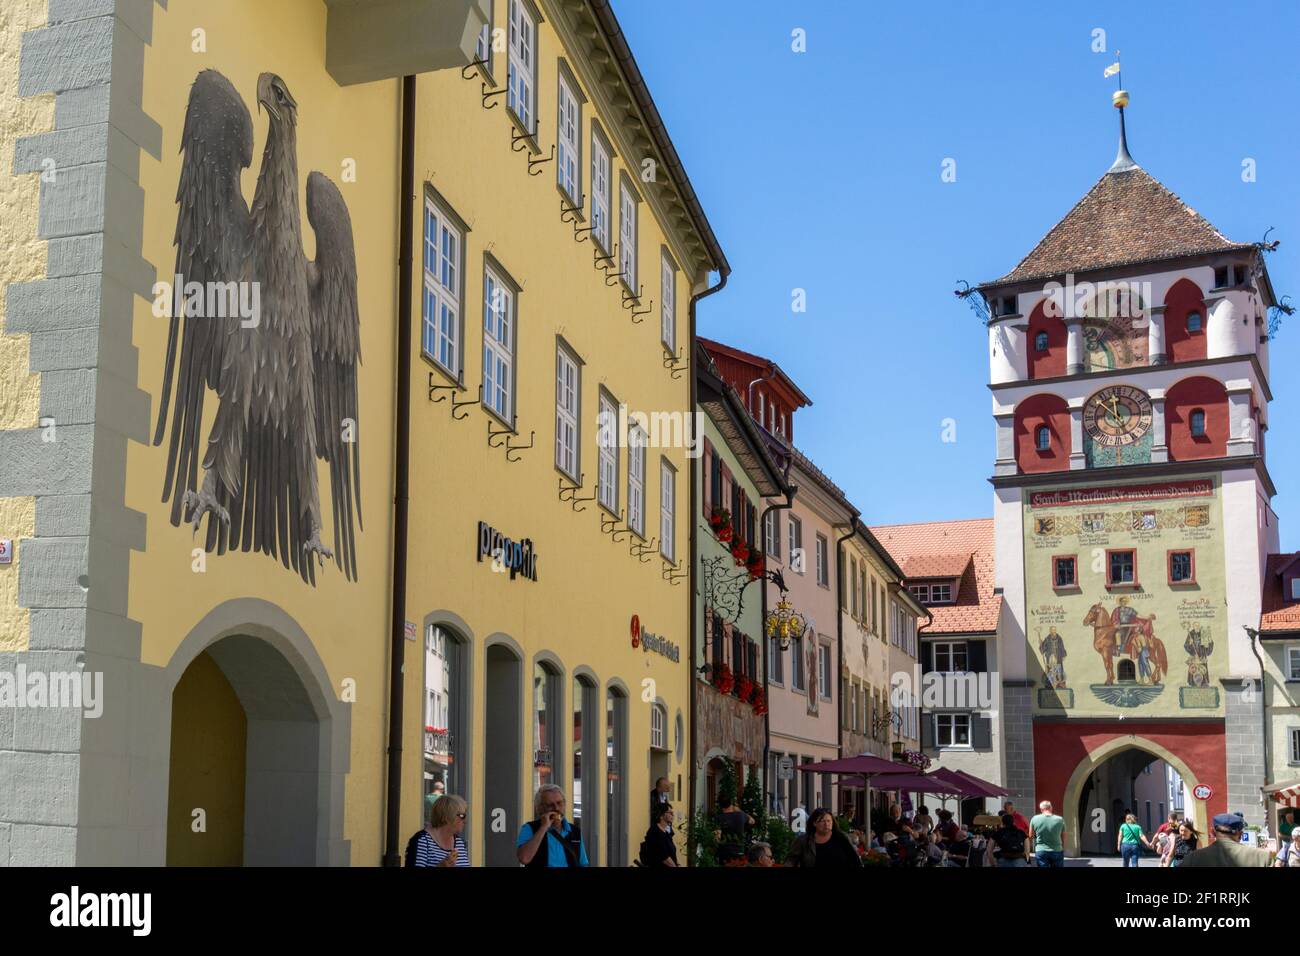 Vue sur la vieille ville historique de Wangen dans l' Allgau avec de nombreux monuments et bâtiments Banque D'Images